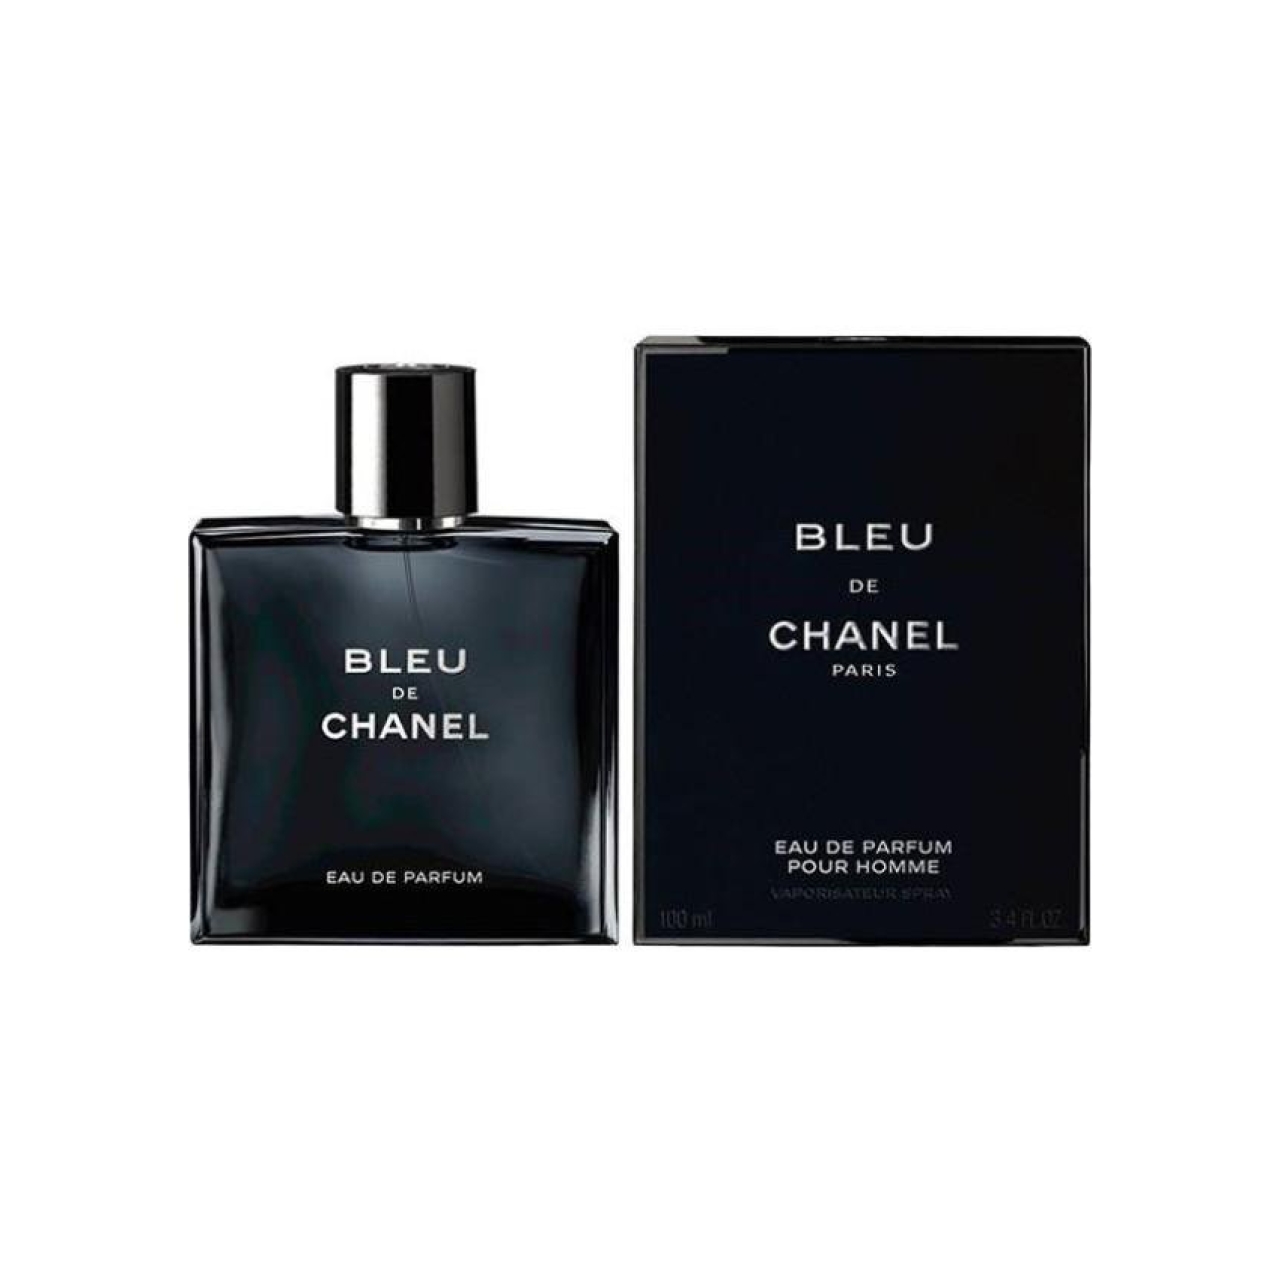 ادکلن مردانه مدل شانل بلو چنل حجم 100 میلی لیتر -Bleu de Chanel